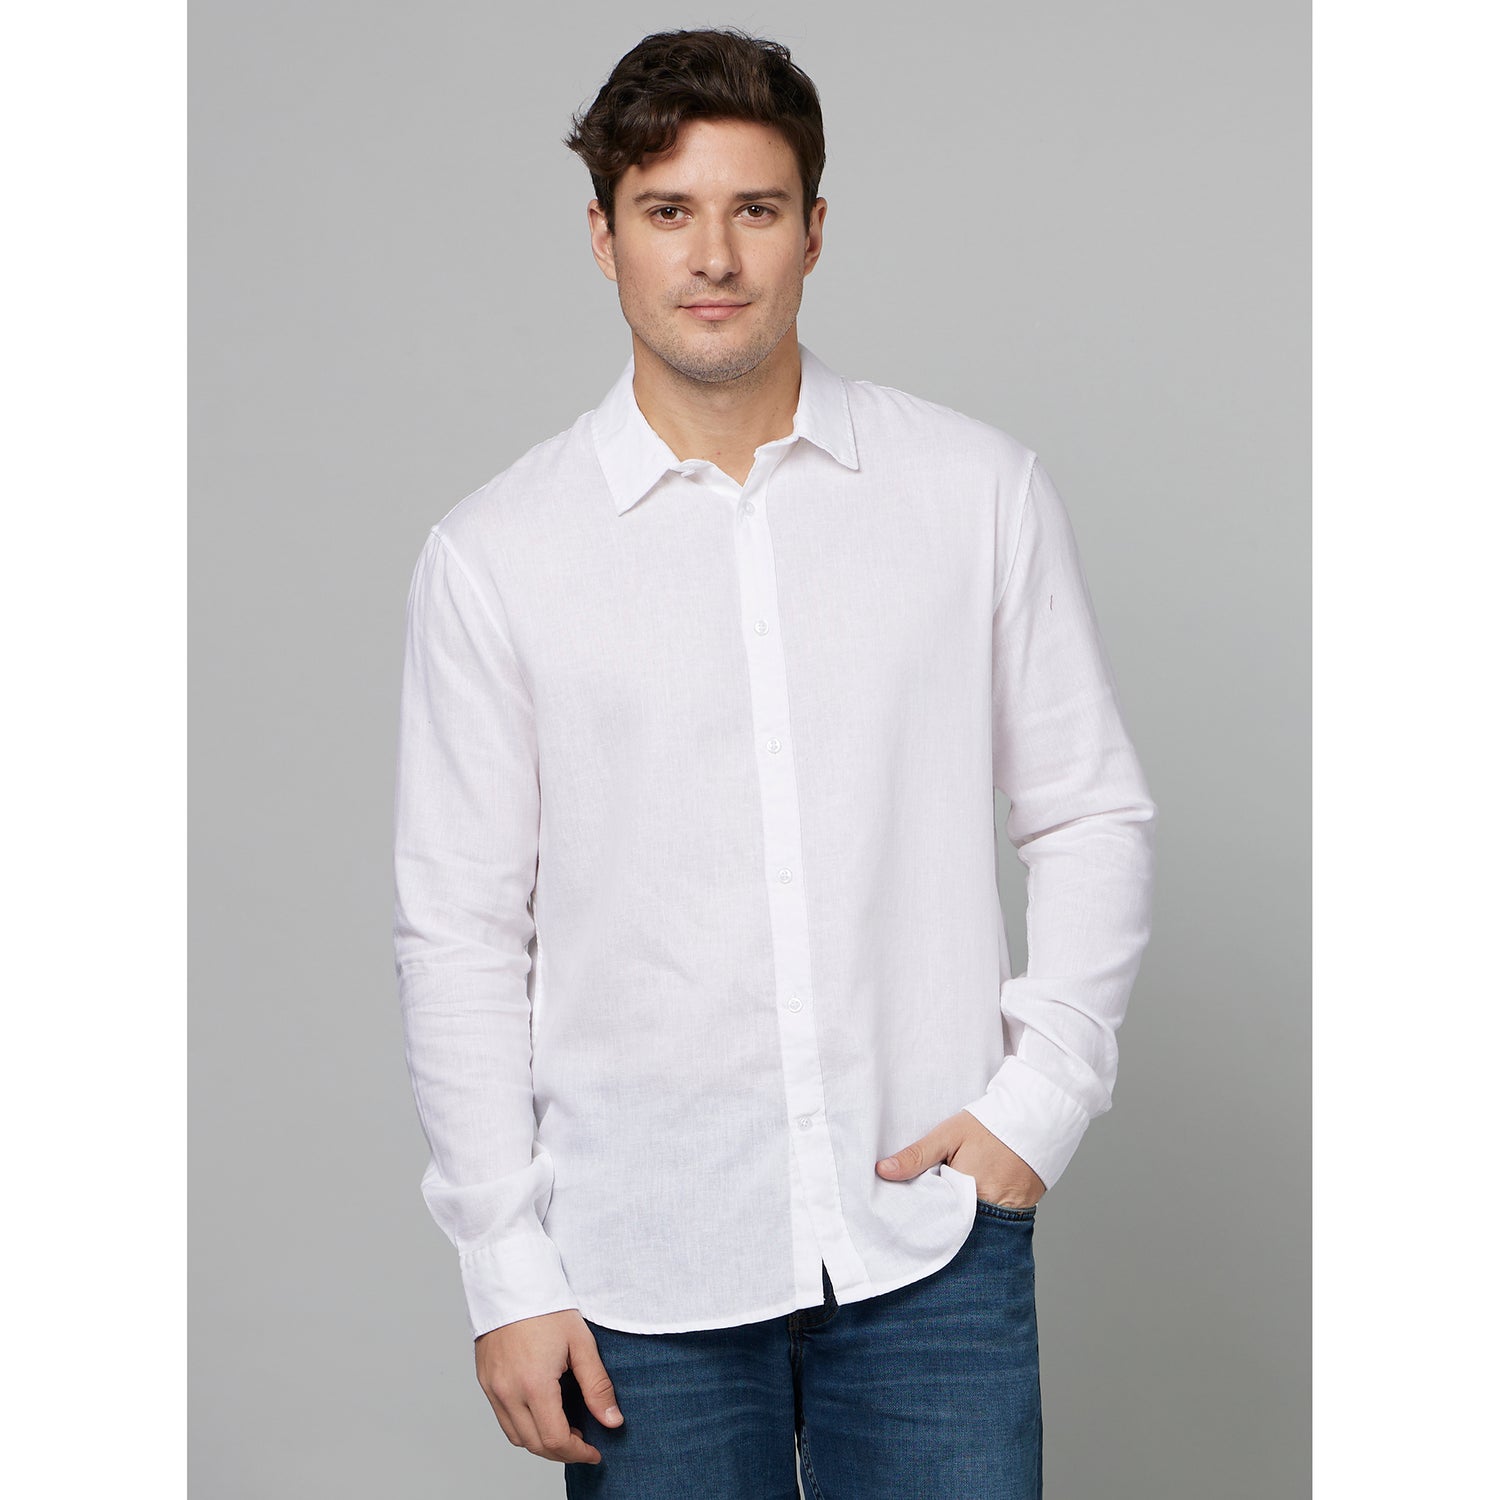 White Classic Opaque Linen Casual Shirt (FALINMOD)